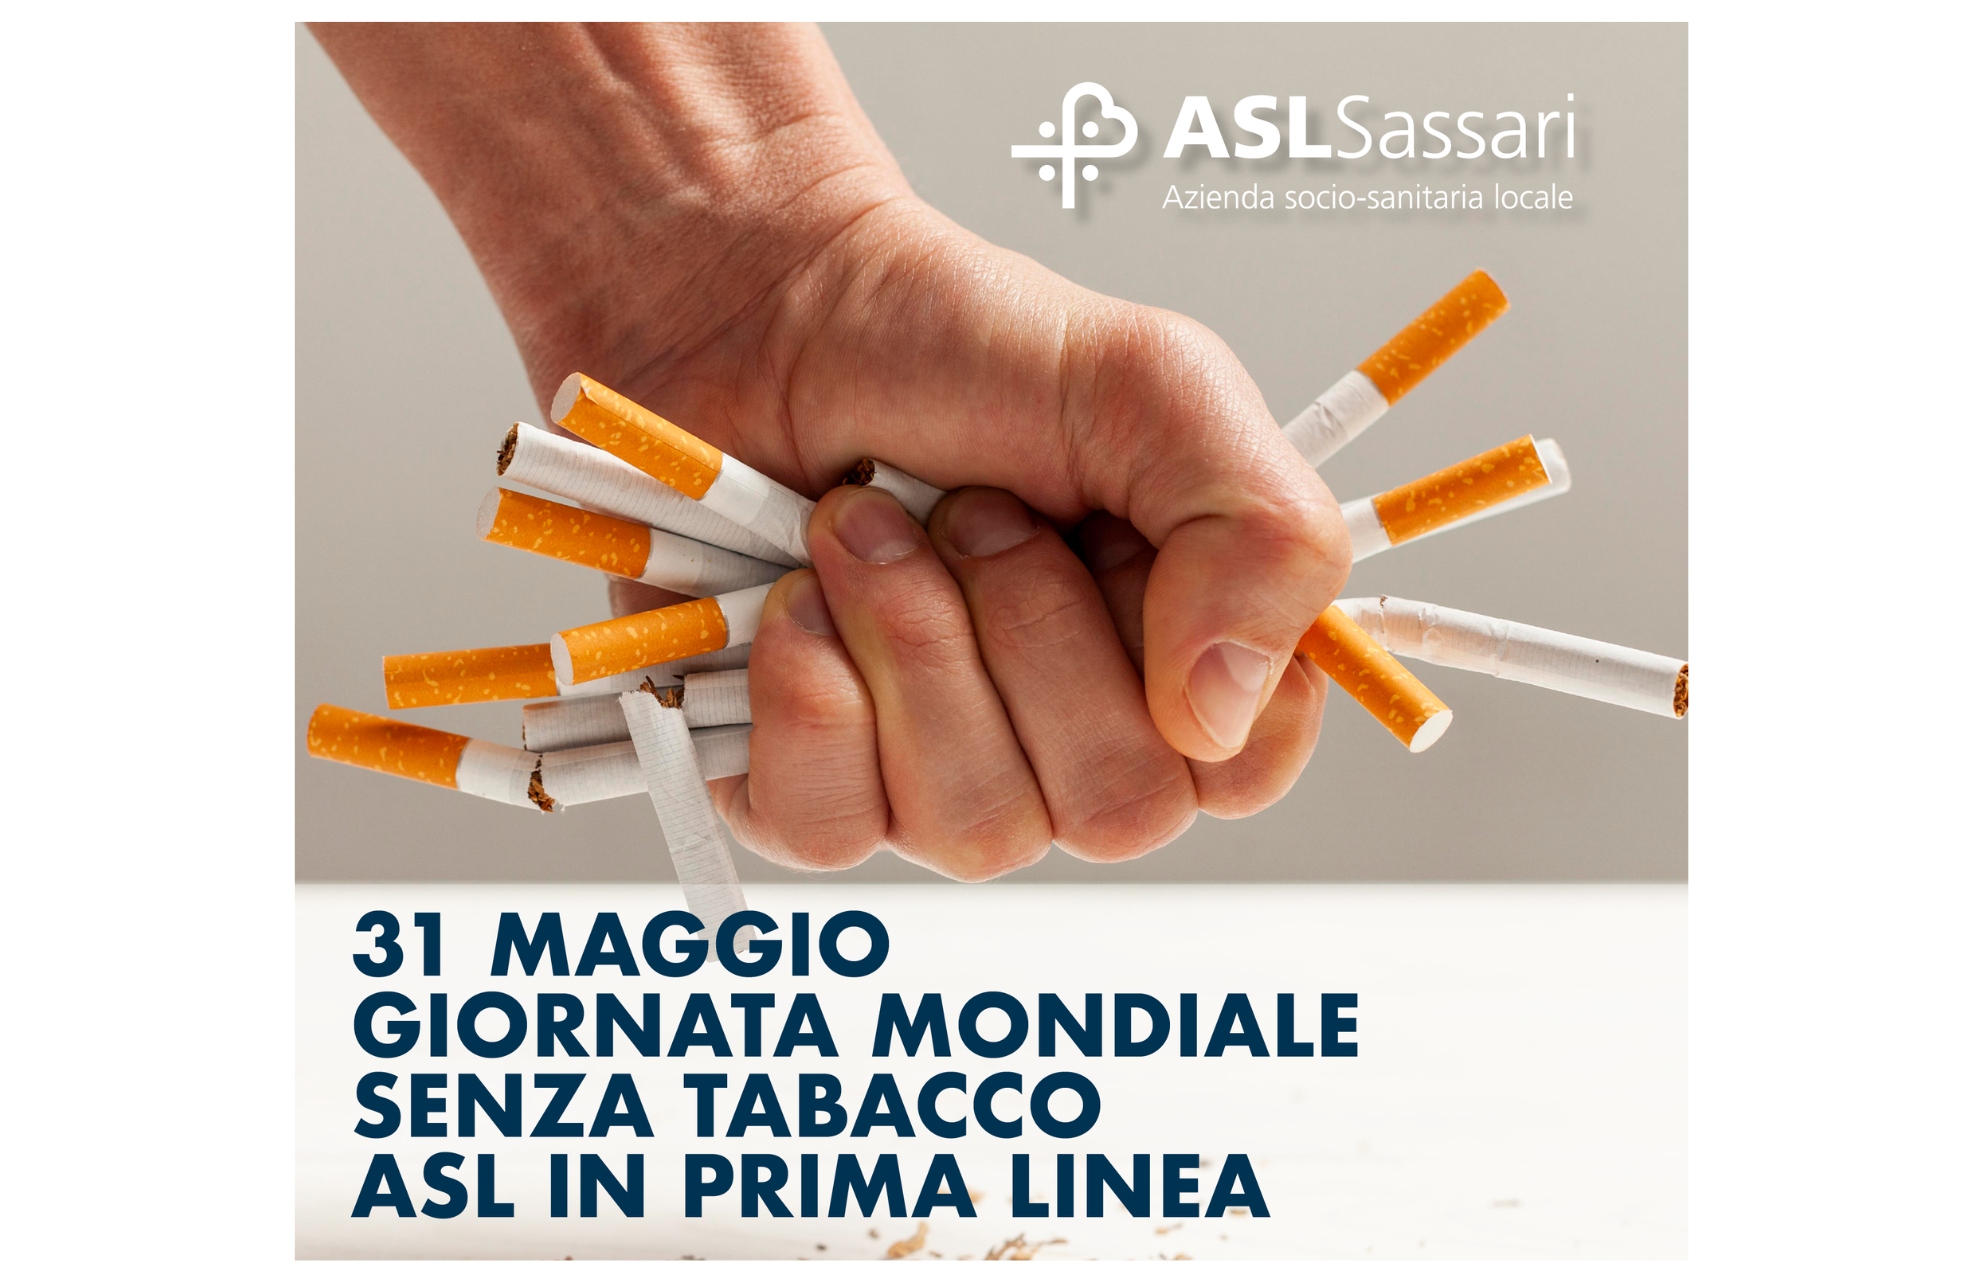 31 maggio: Giornata mondiale senza tabacco nella Asl di Sassari